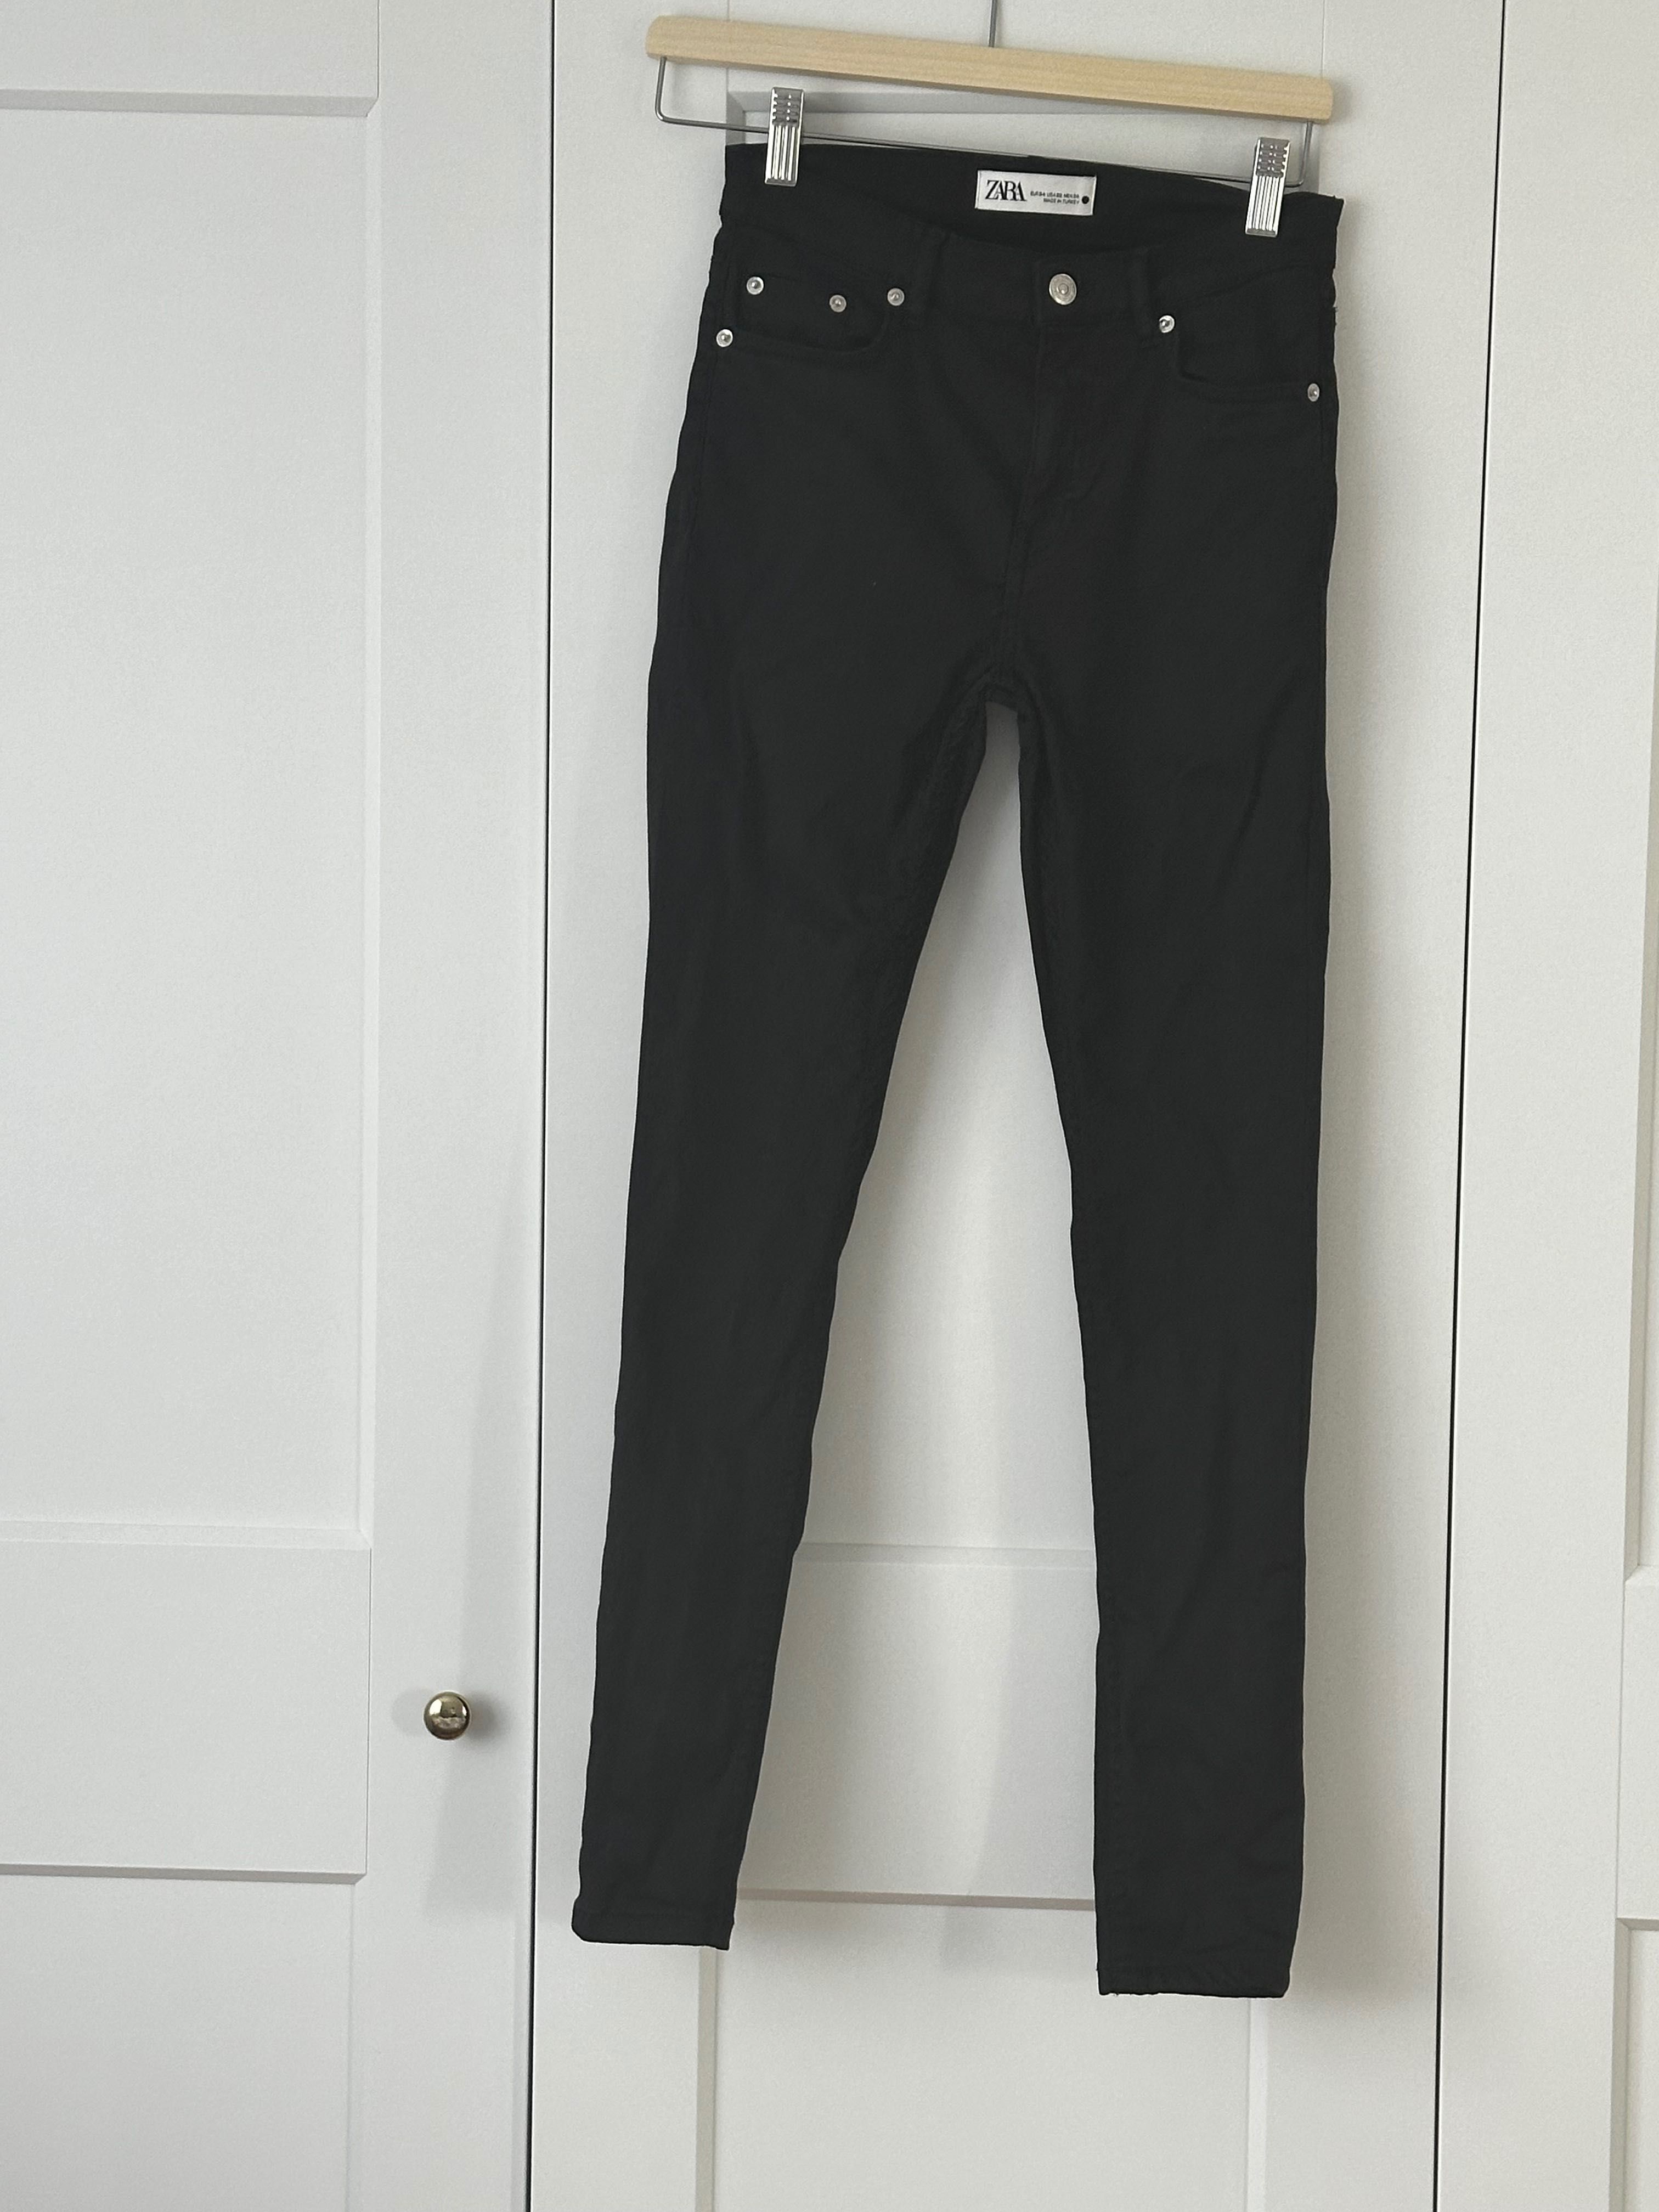 Dwie pary spodni Czarne rurki, spodnie Zara 34